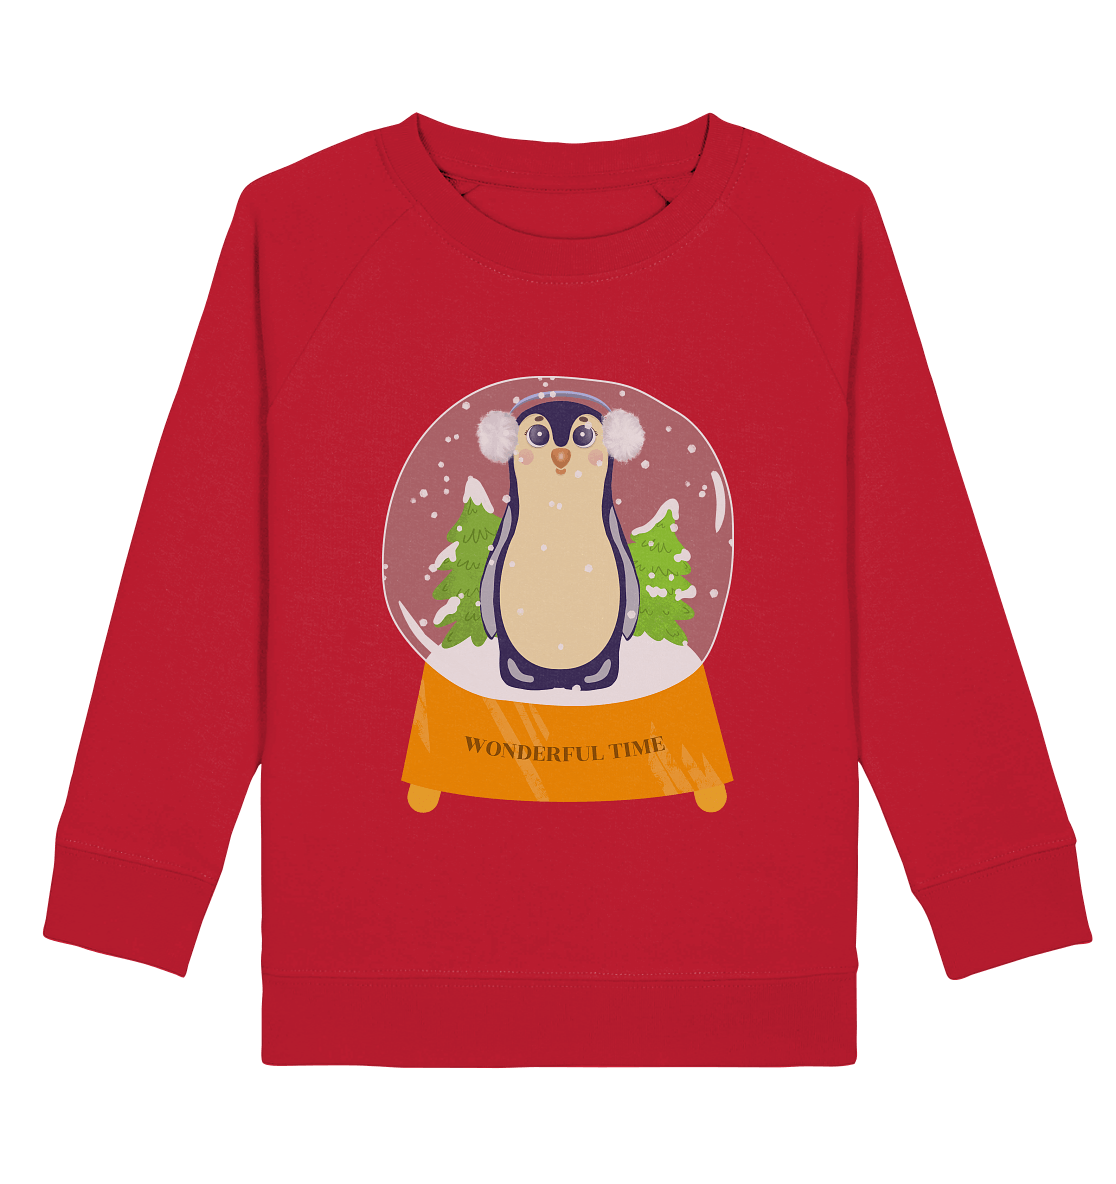 Pinguin Cartoon in Glaskugel Wonderful time Kinder Sweatshirt in rot mit handgezeichneten Pinguin Sweatshirt in rot